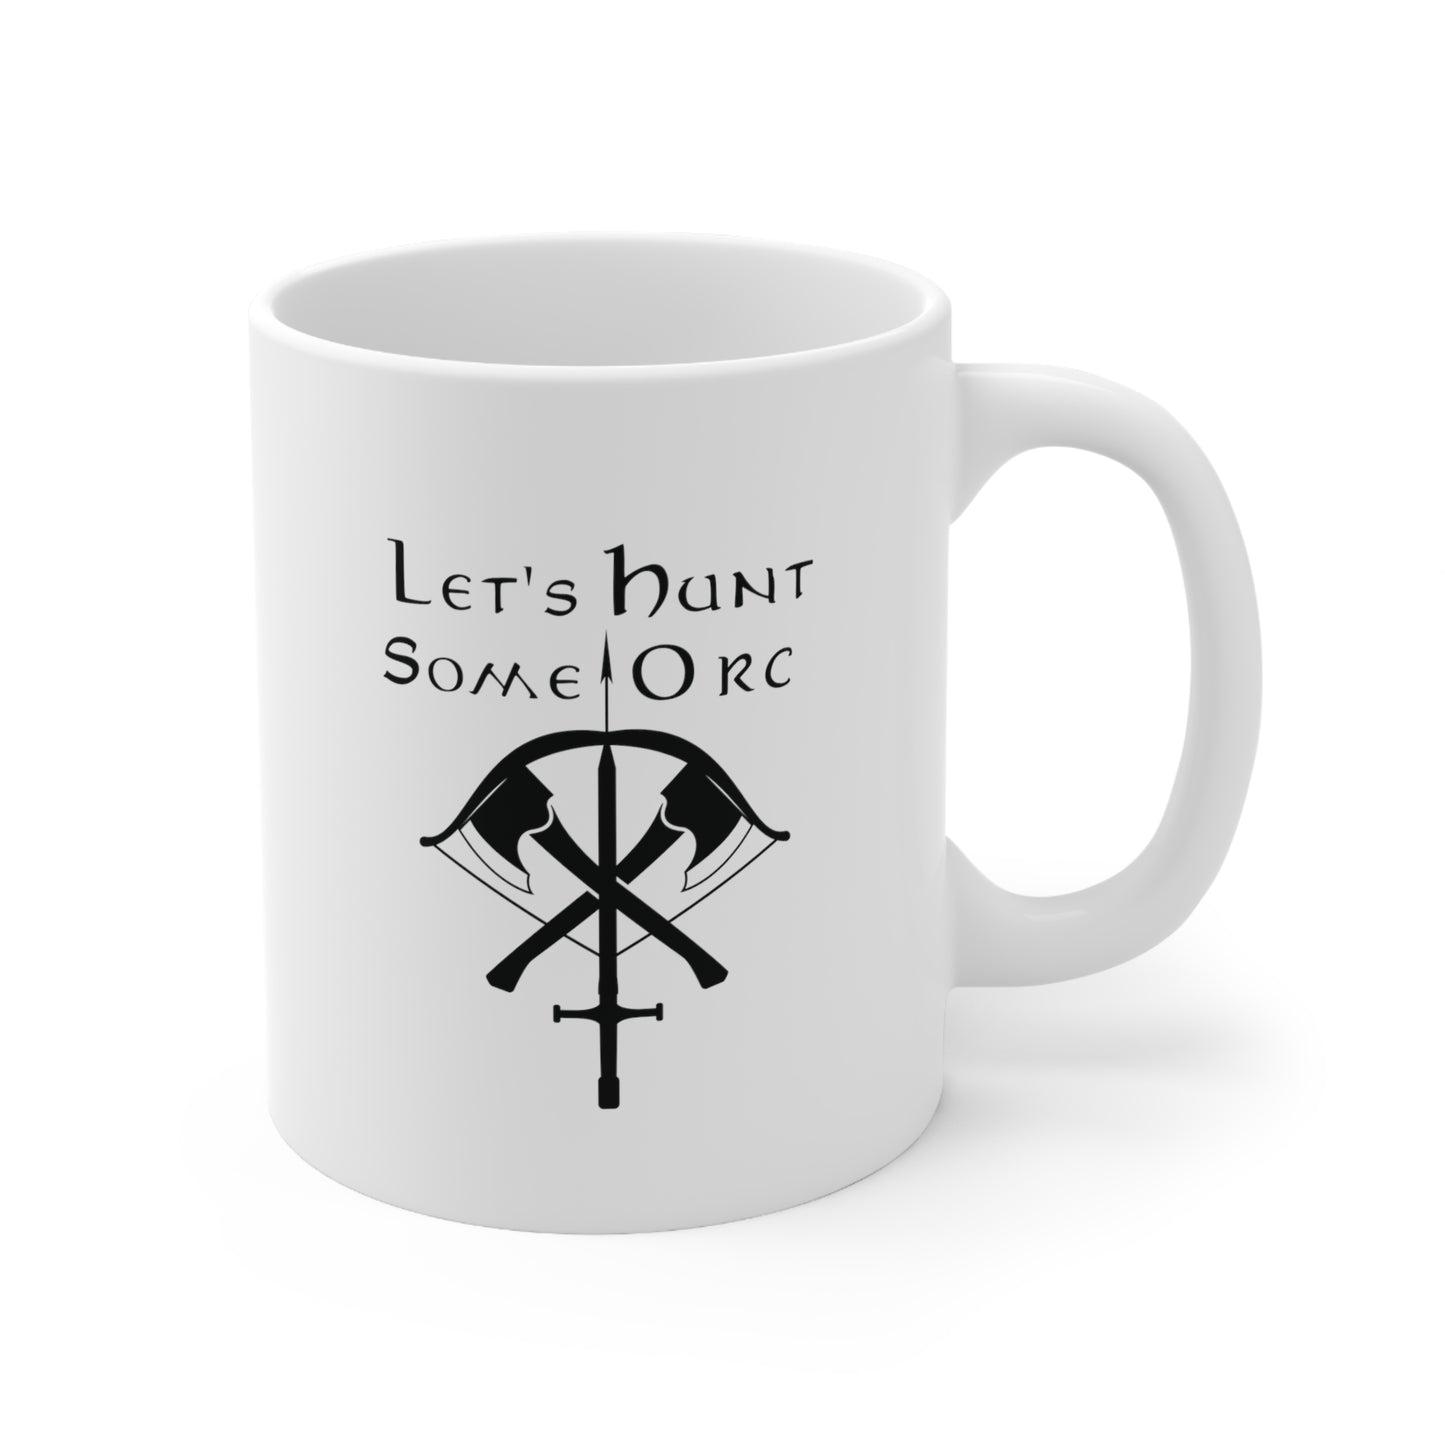 "LET'S HUNT SOME ORC" Mug